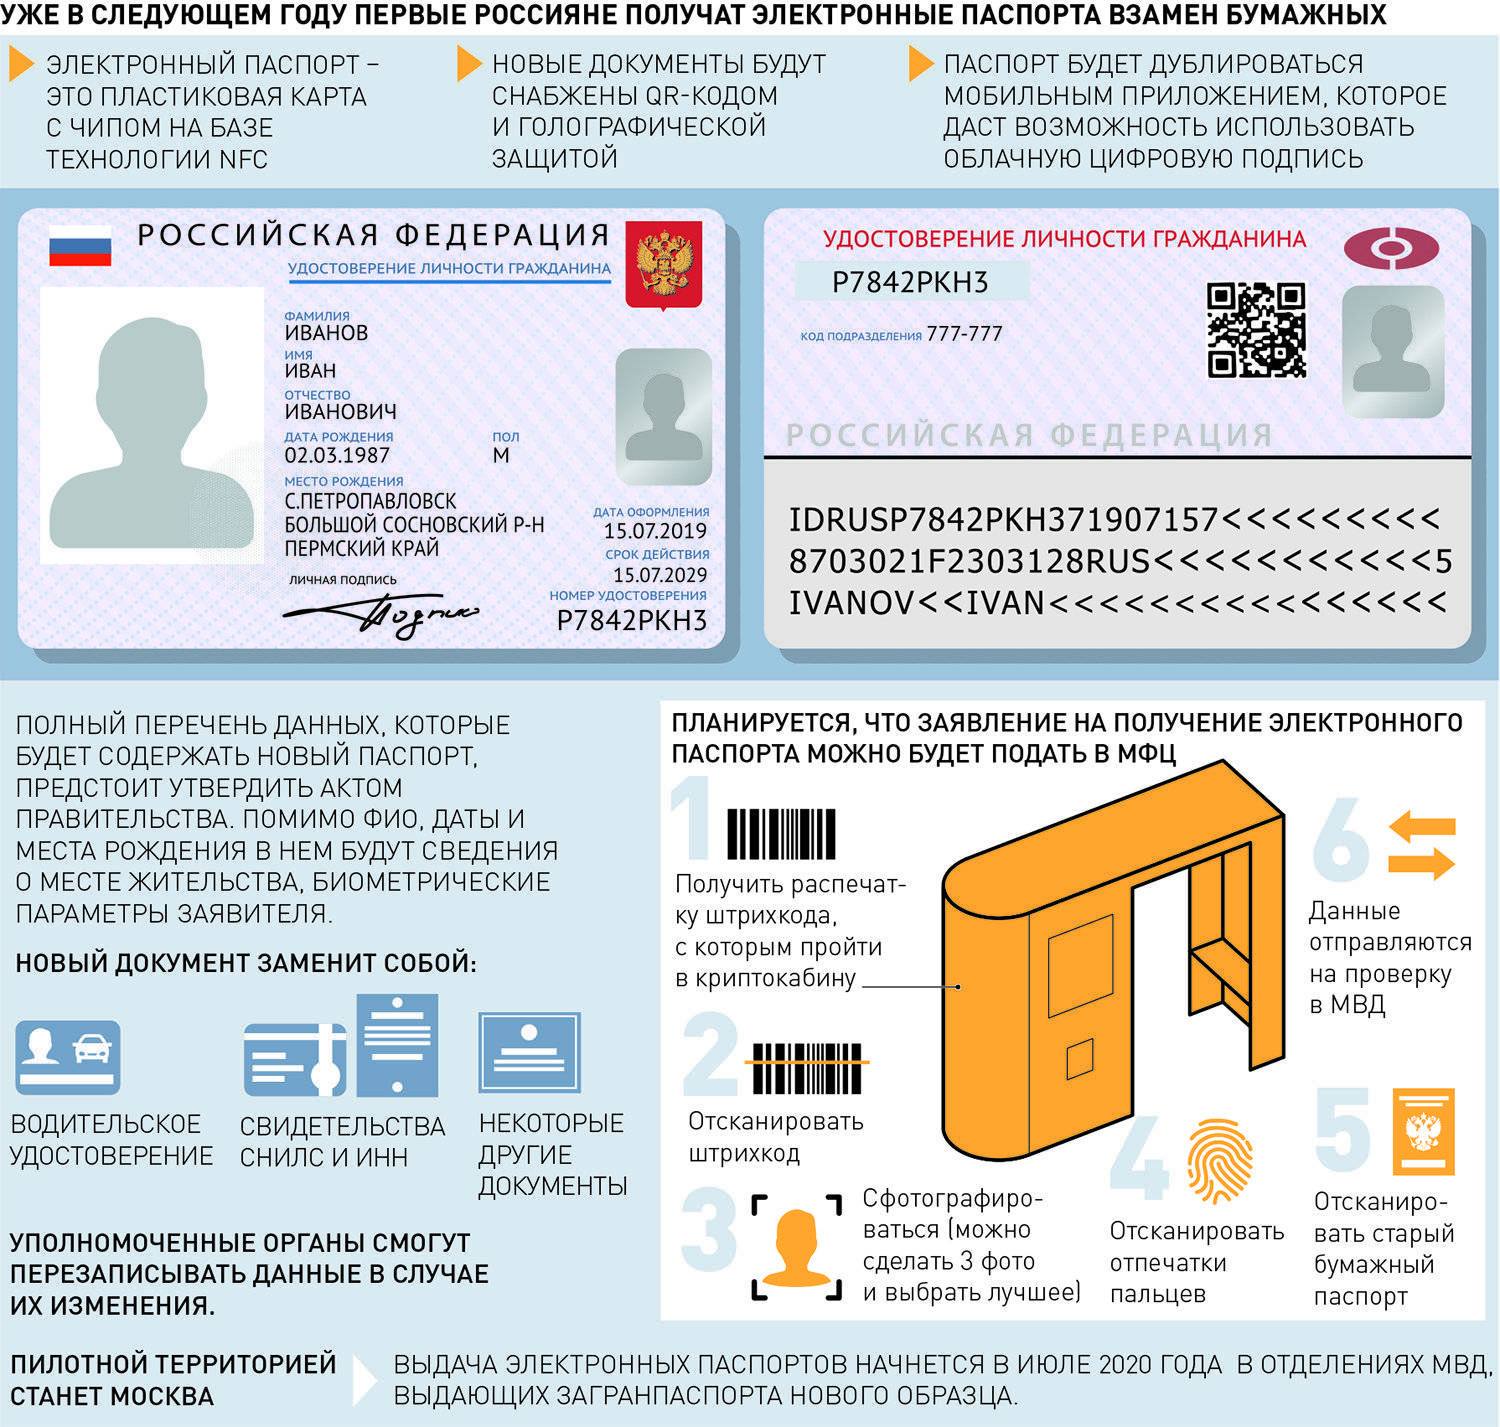 Электронный паспорт (паспорт нового поколения): как получить?